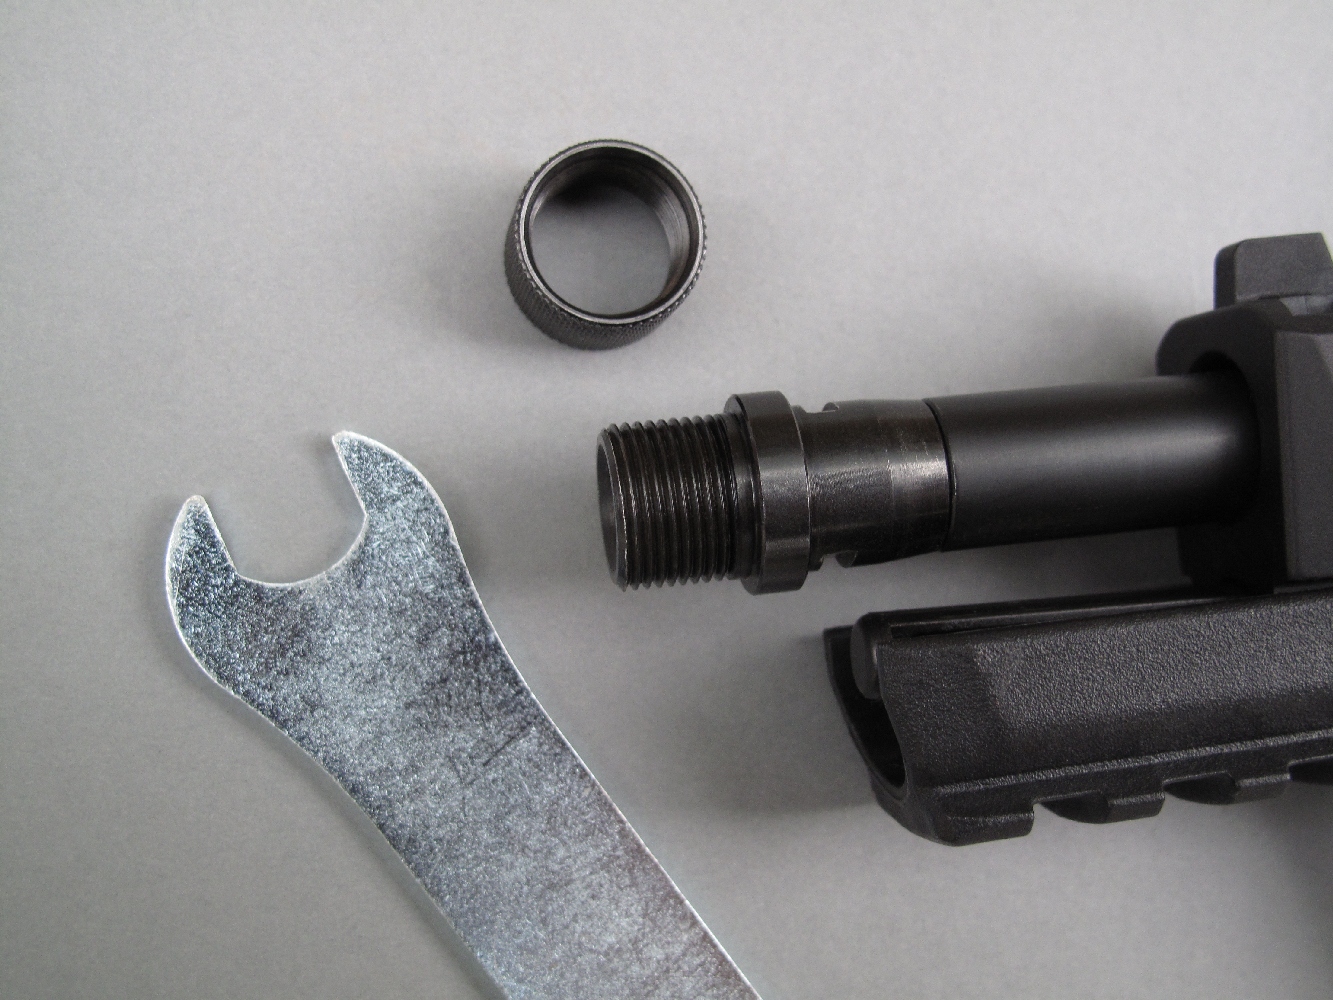 Une clé plate de 7/16 pouce (environ 11 mm) est fournie avec l’arme pour permettre la dépose de l’embout fileté (Threated Barrel Cap).